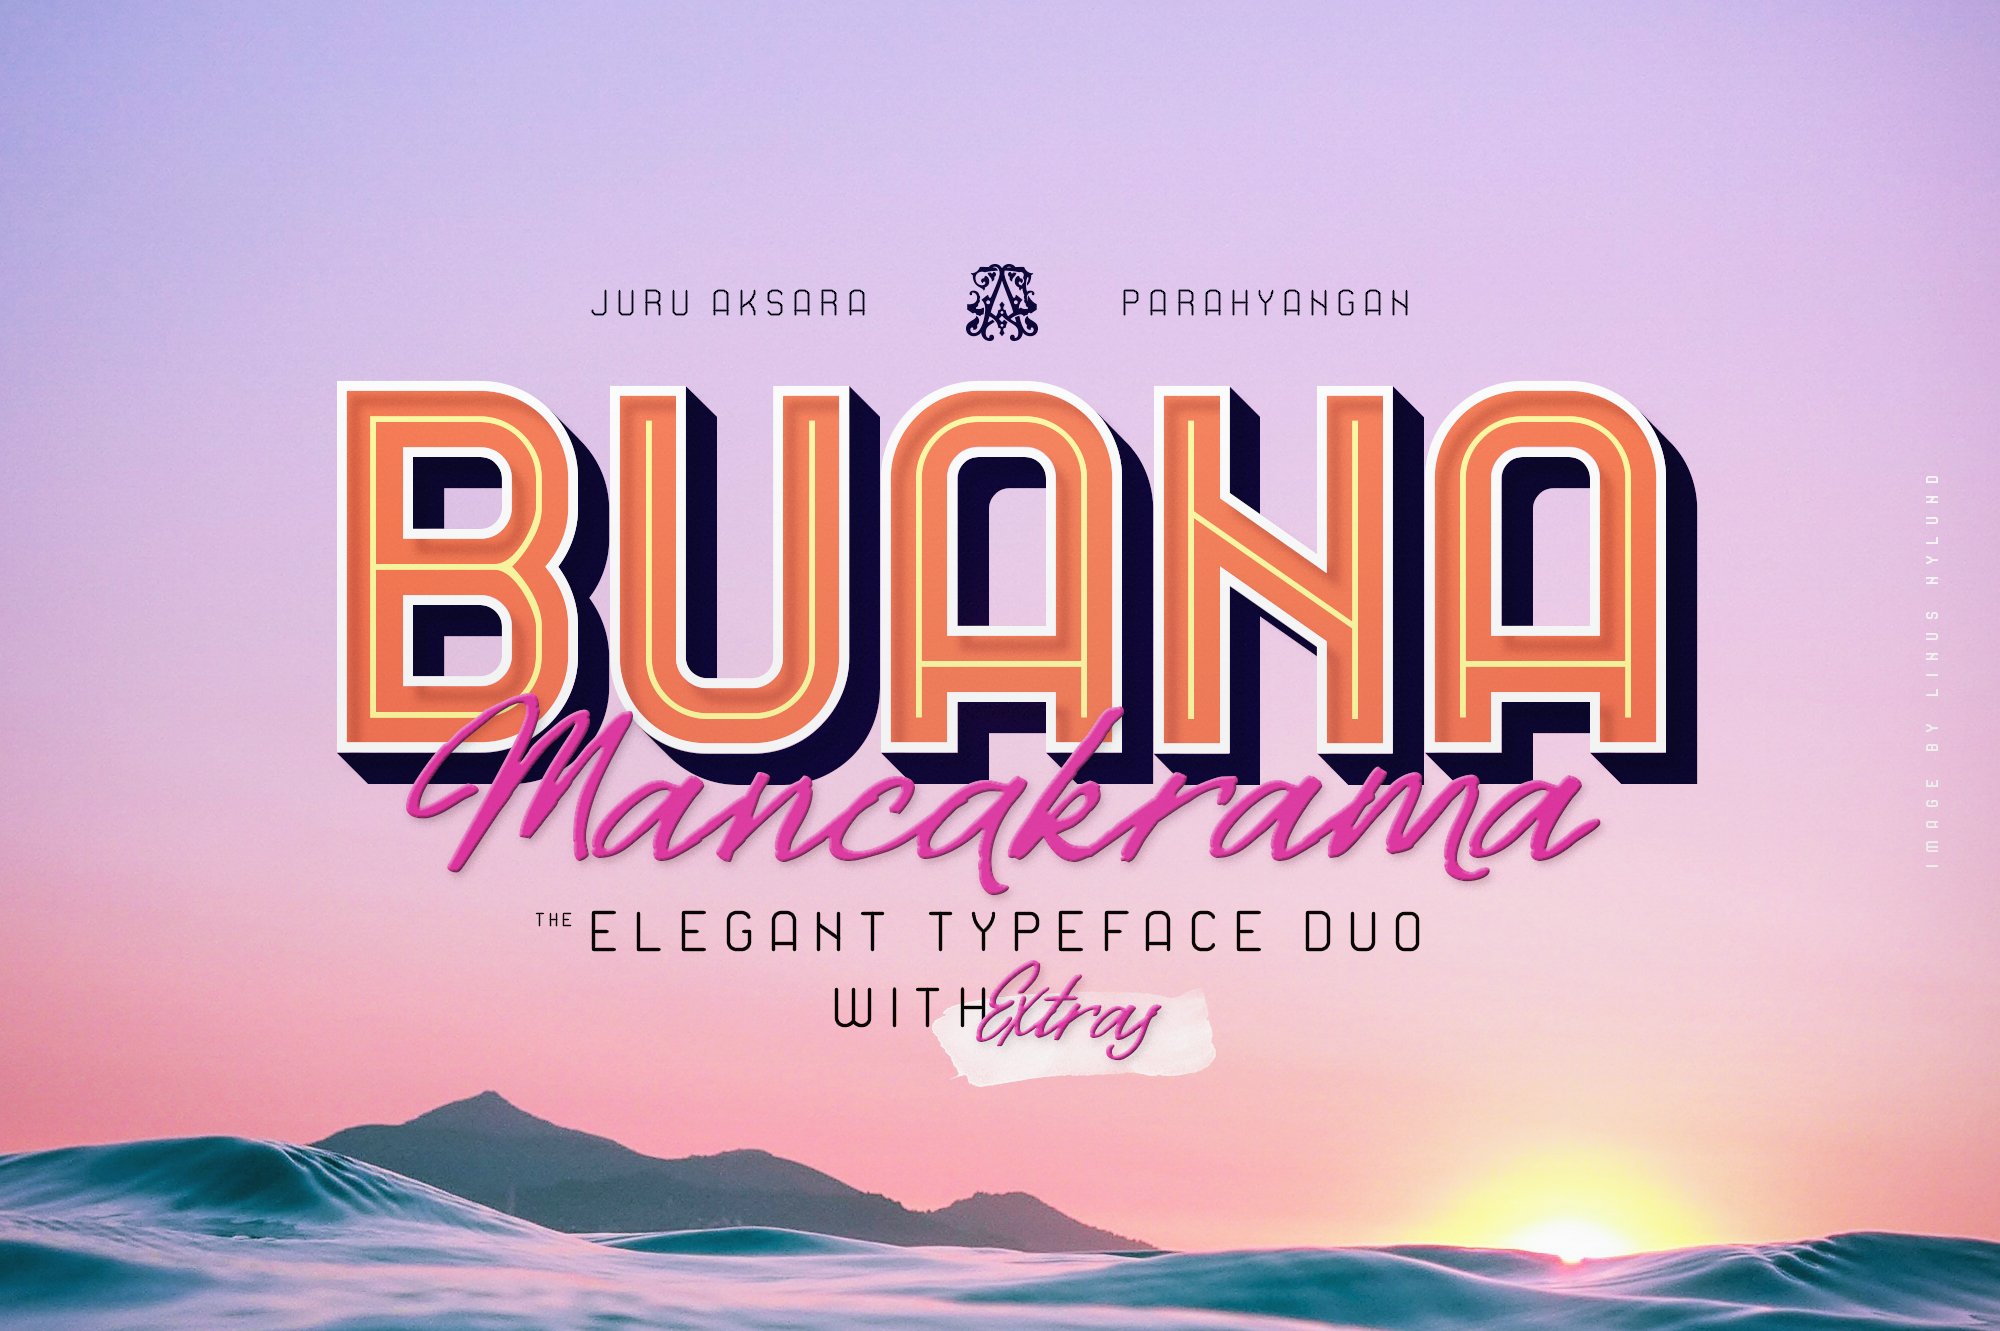 Buana & Mancakrama Typeface Duo cover image.